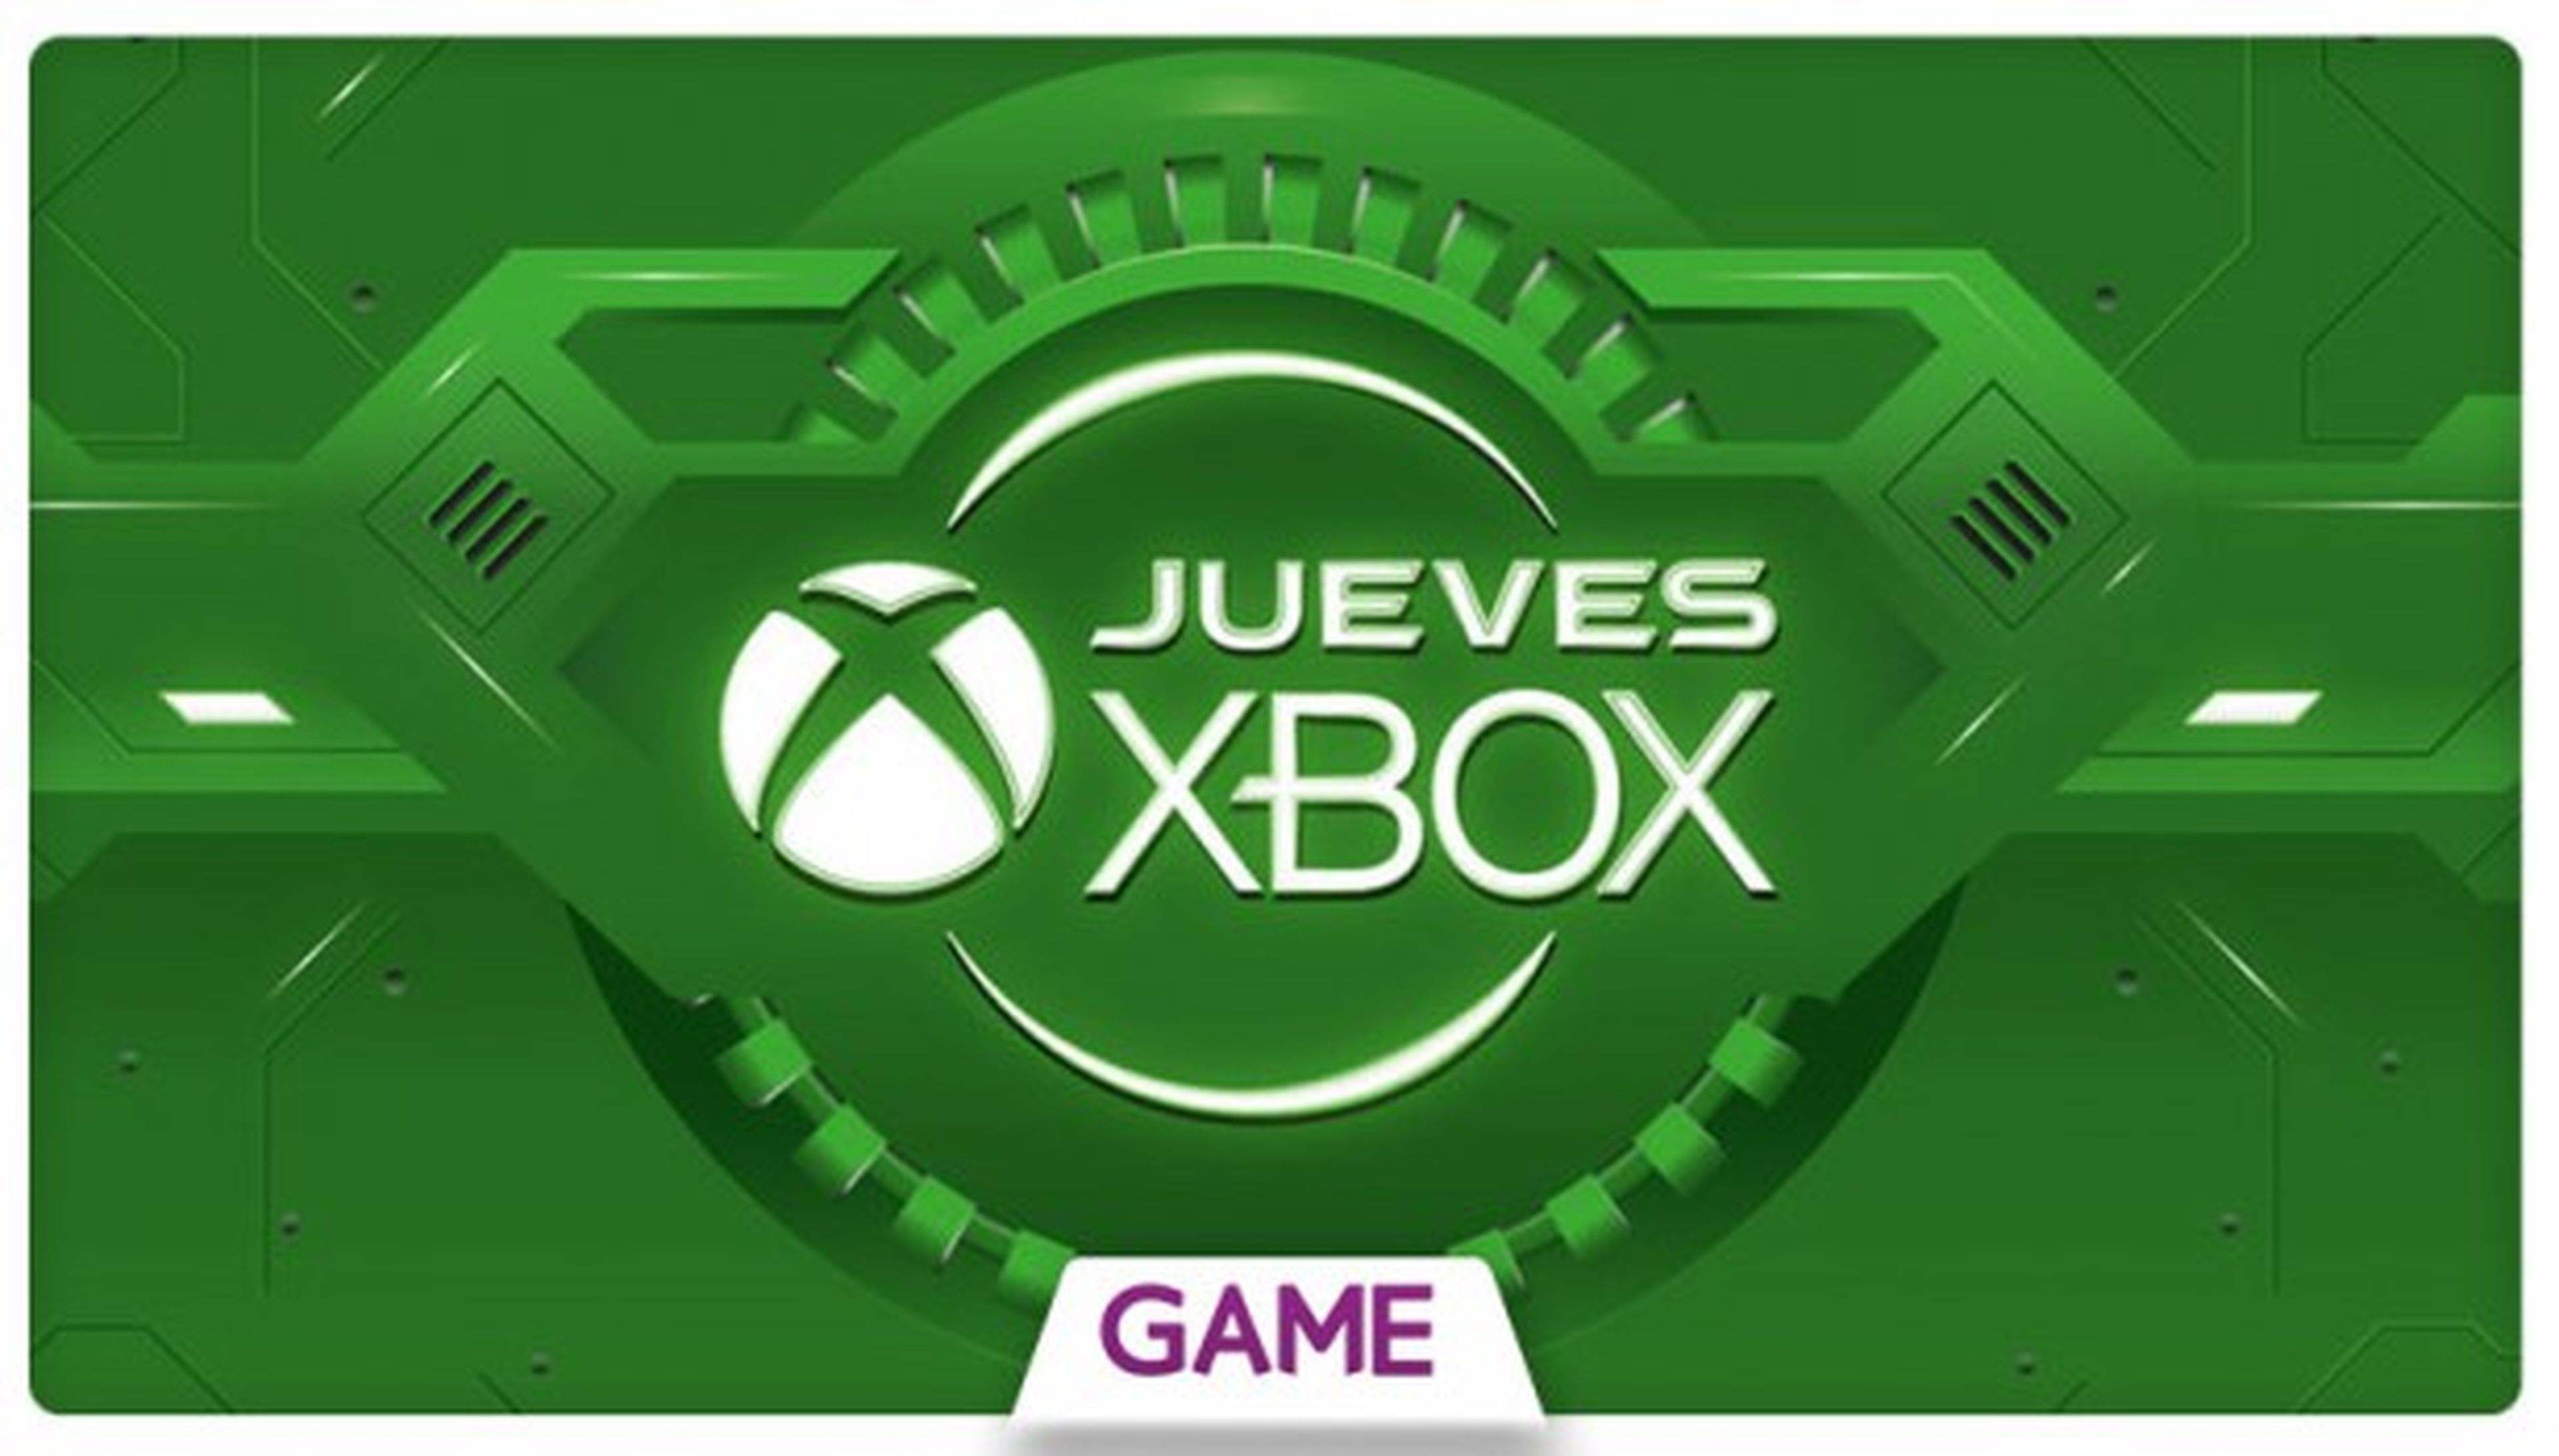 Jueves Xbox en GAME: Ofertas del 03/03/2016